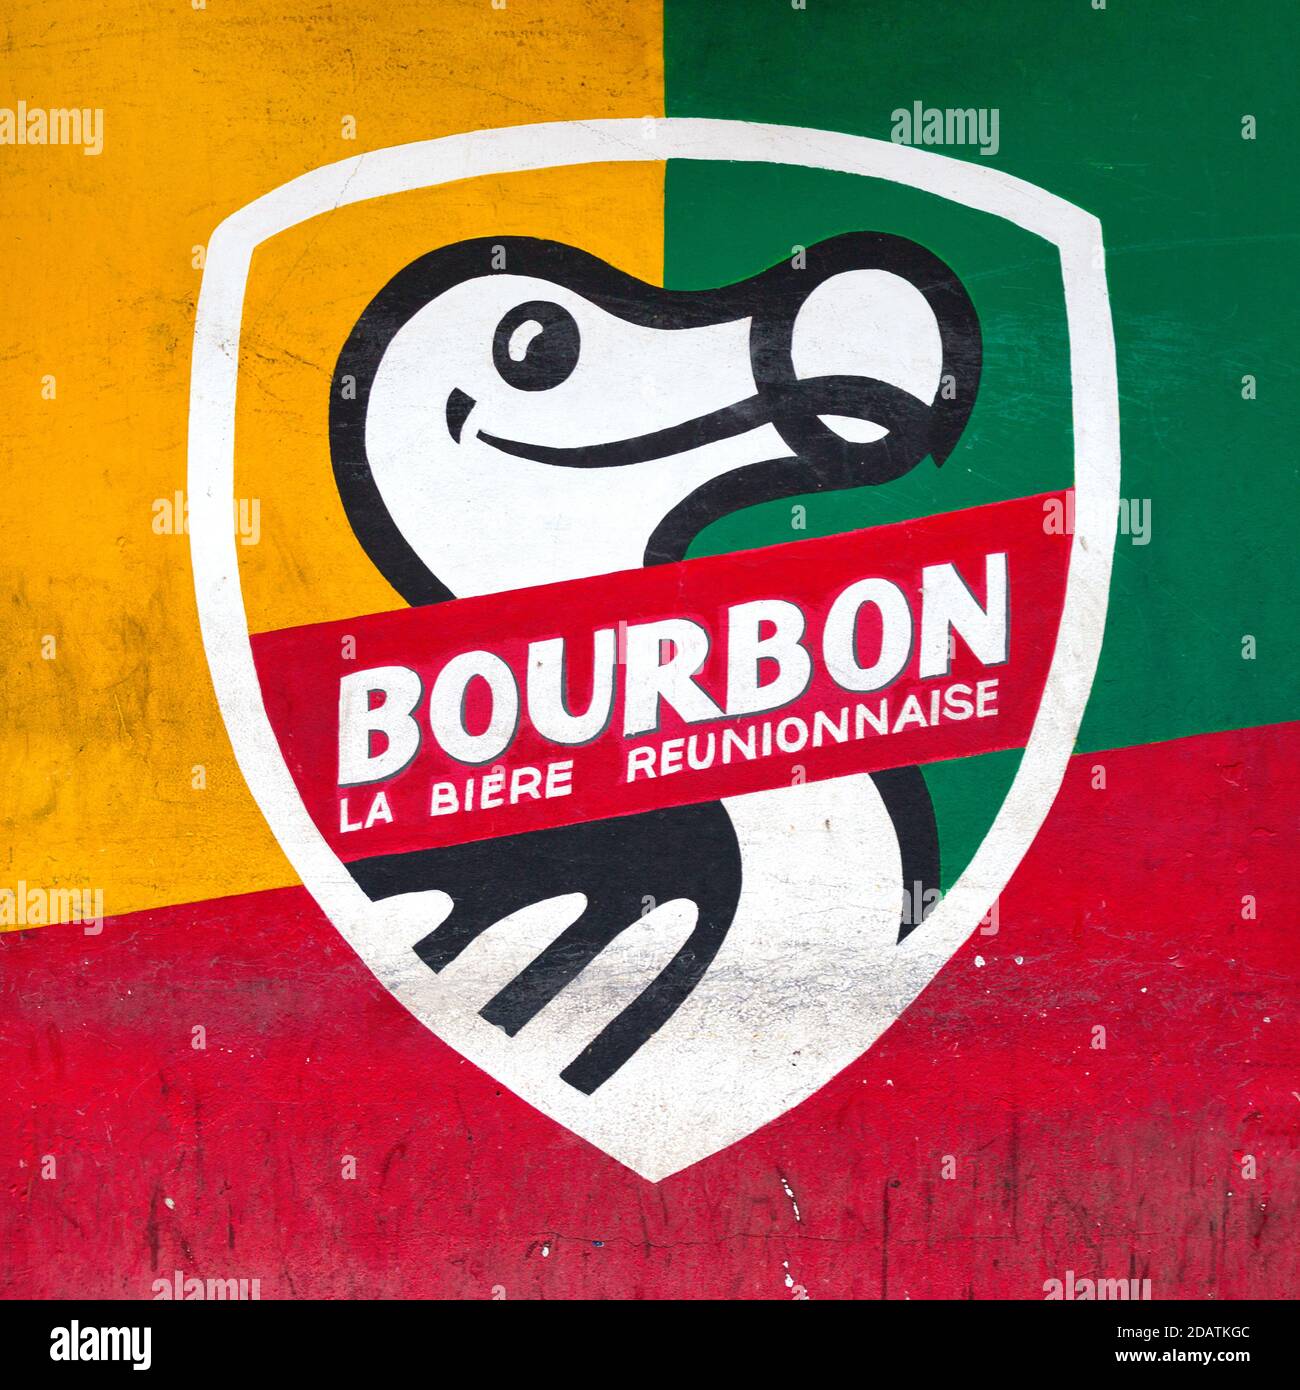 Saint-Denis, La Réunion - Dezember 09 2014: Wand eines Hauses mit den Farben der lokalen Bierbrauerei Bourbon mit dem Instinkt Dodo Vogelsym gemalt Stockfoto